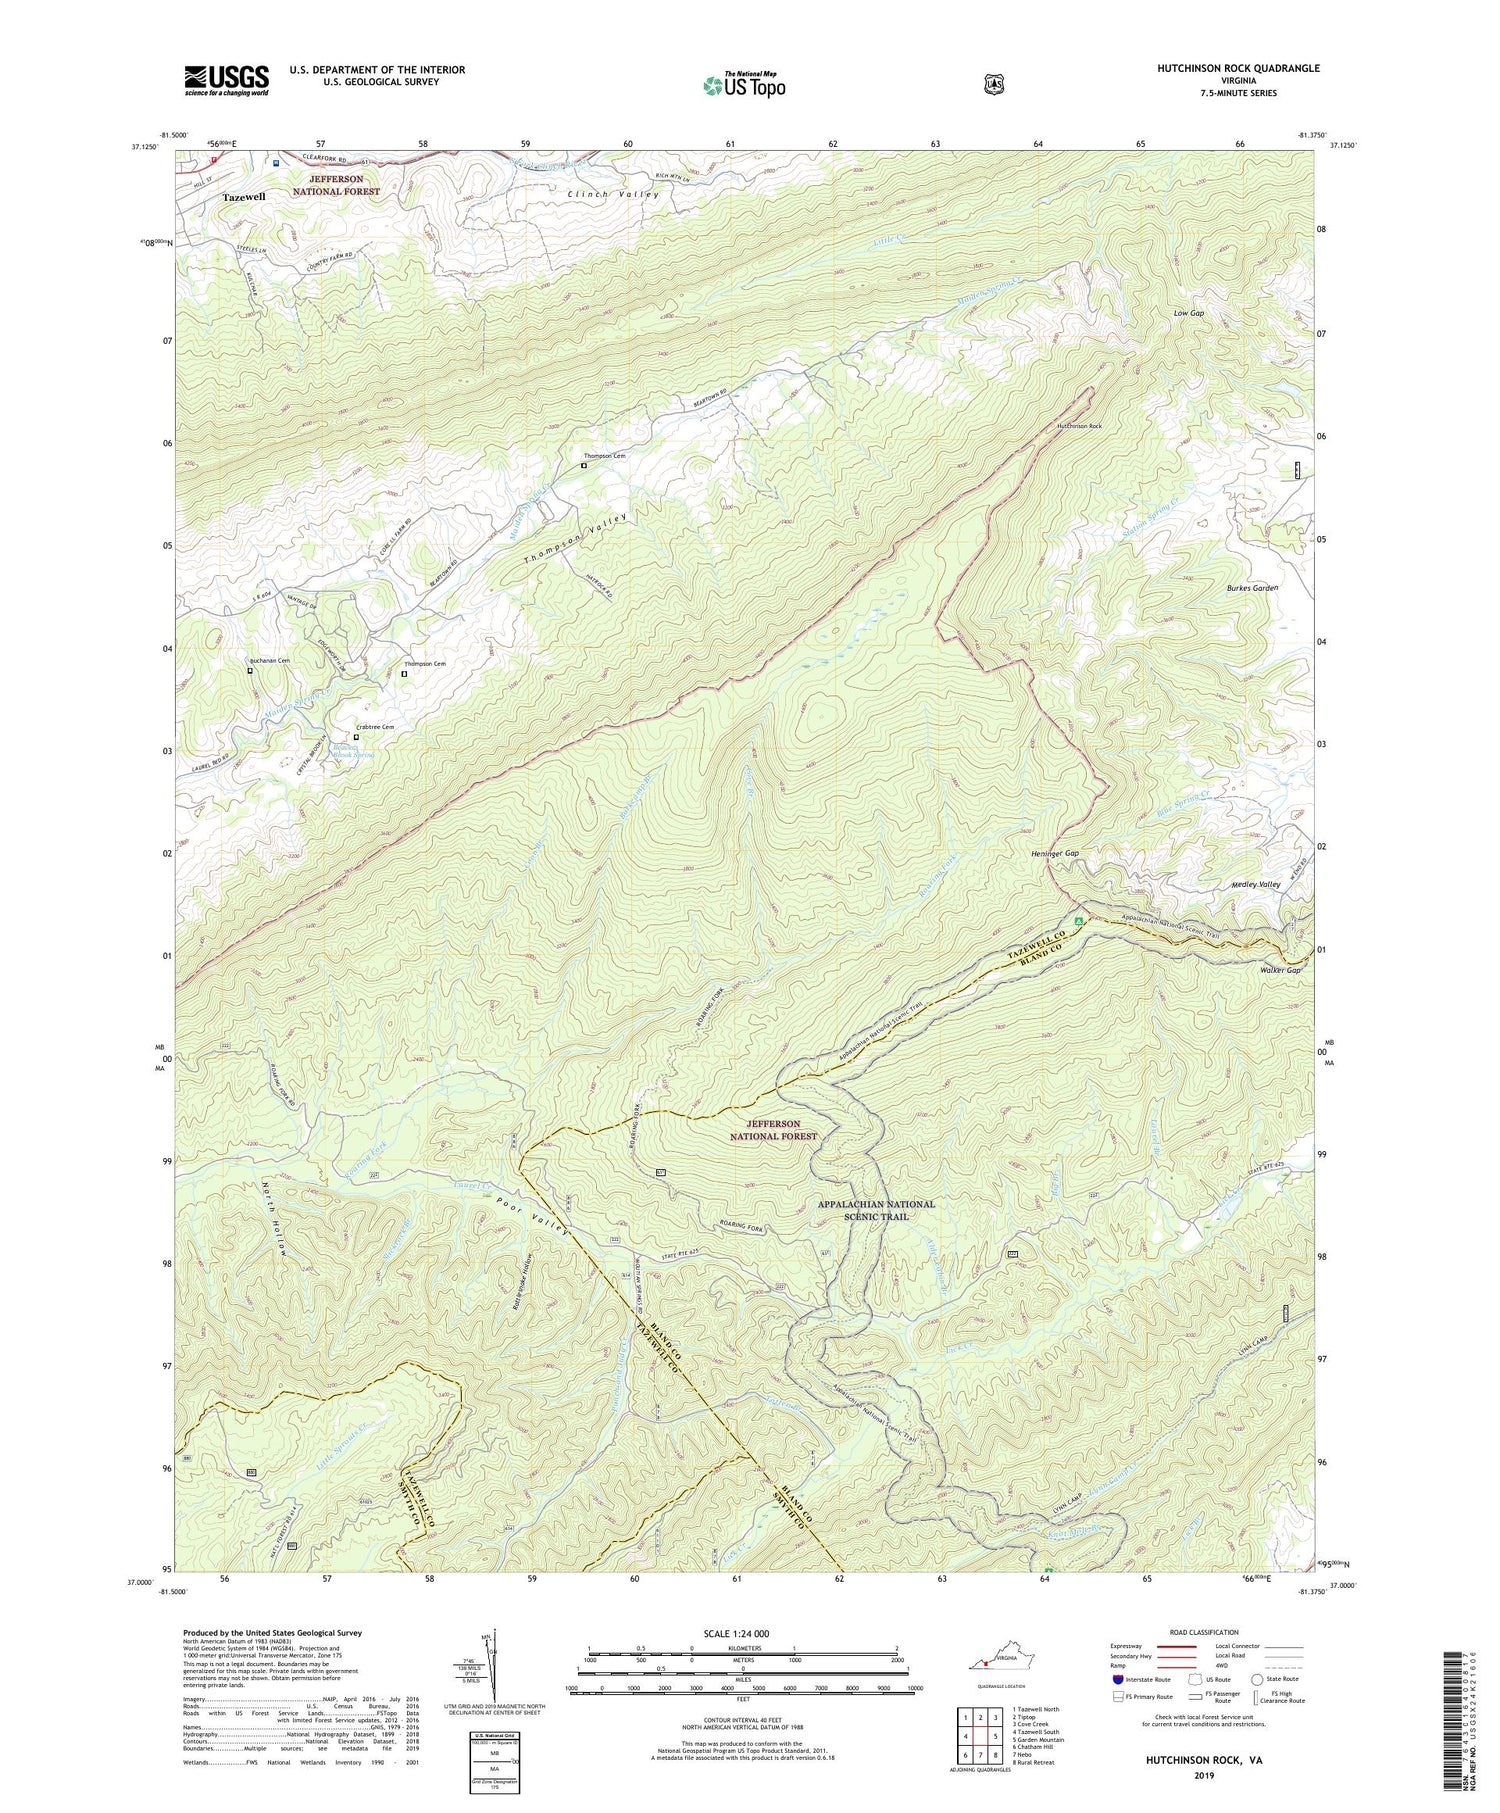 Hutchinson Rock Virginia US Topo Map Image